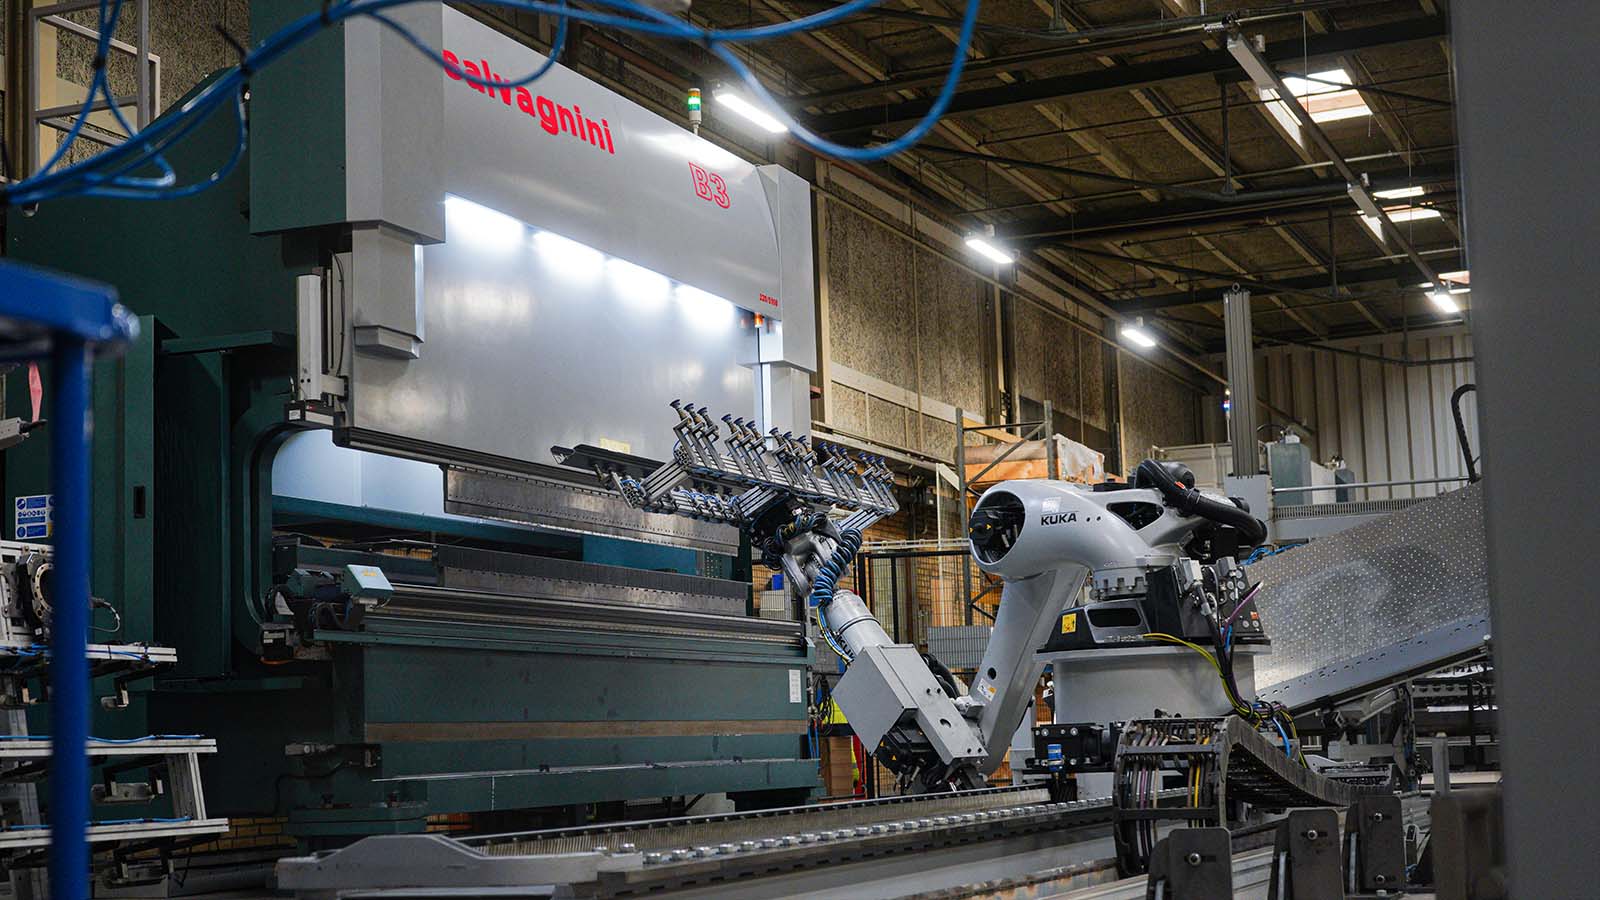 Abkantpresszelle mit Roboterarm zur Herstellung von Stahlkomponenten